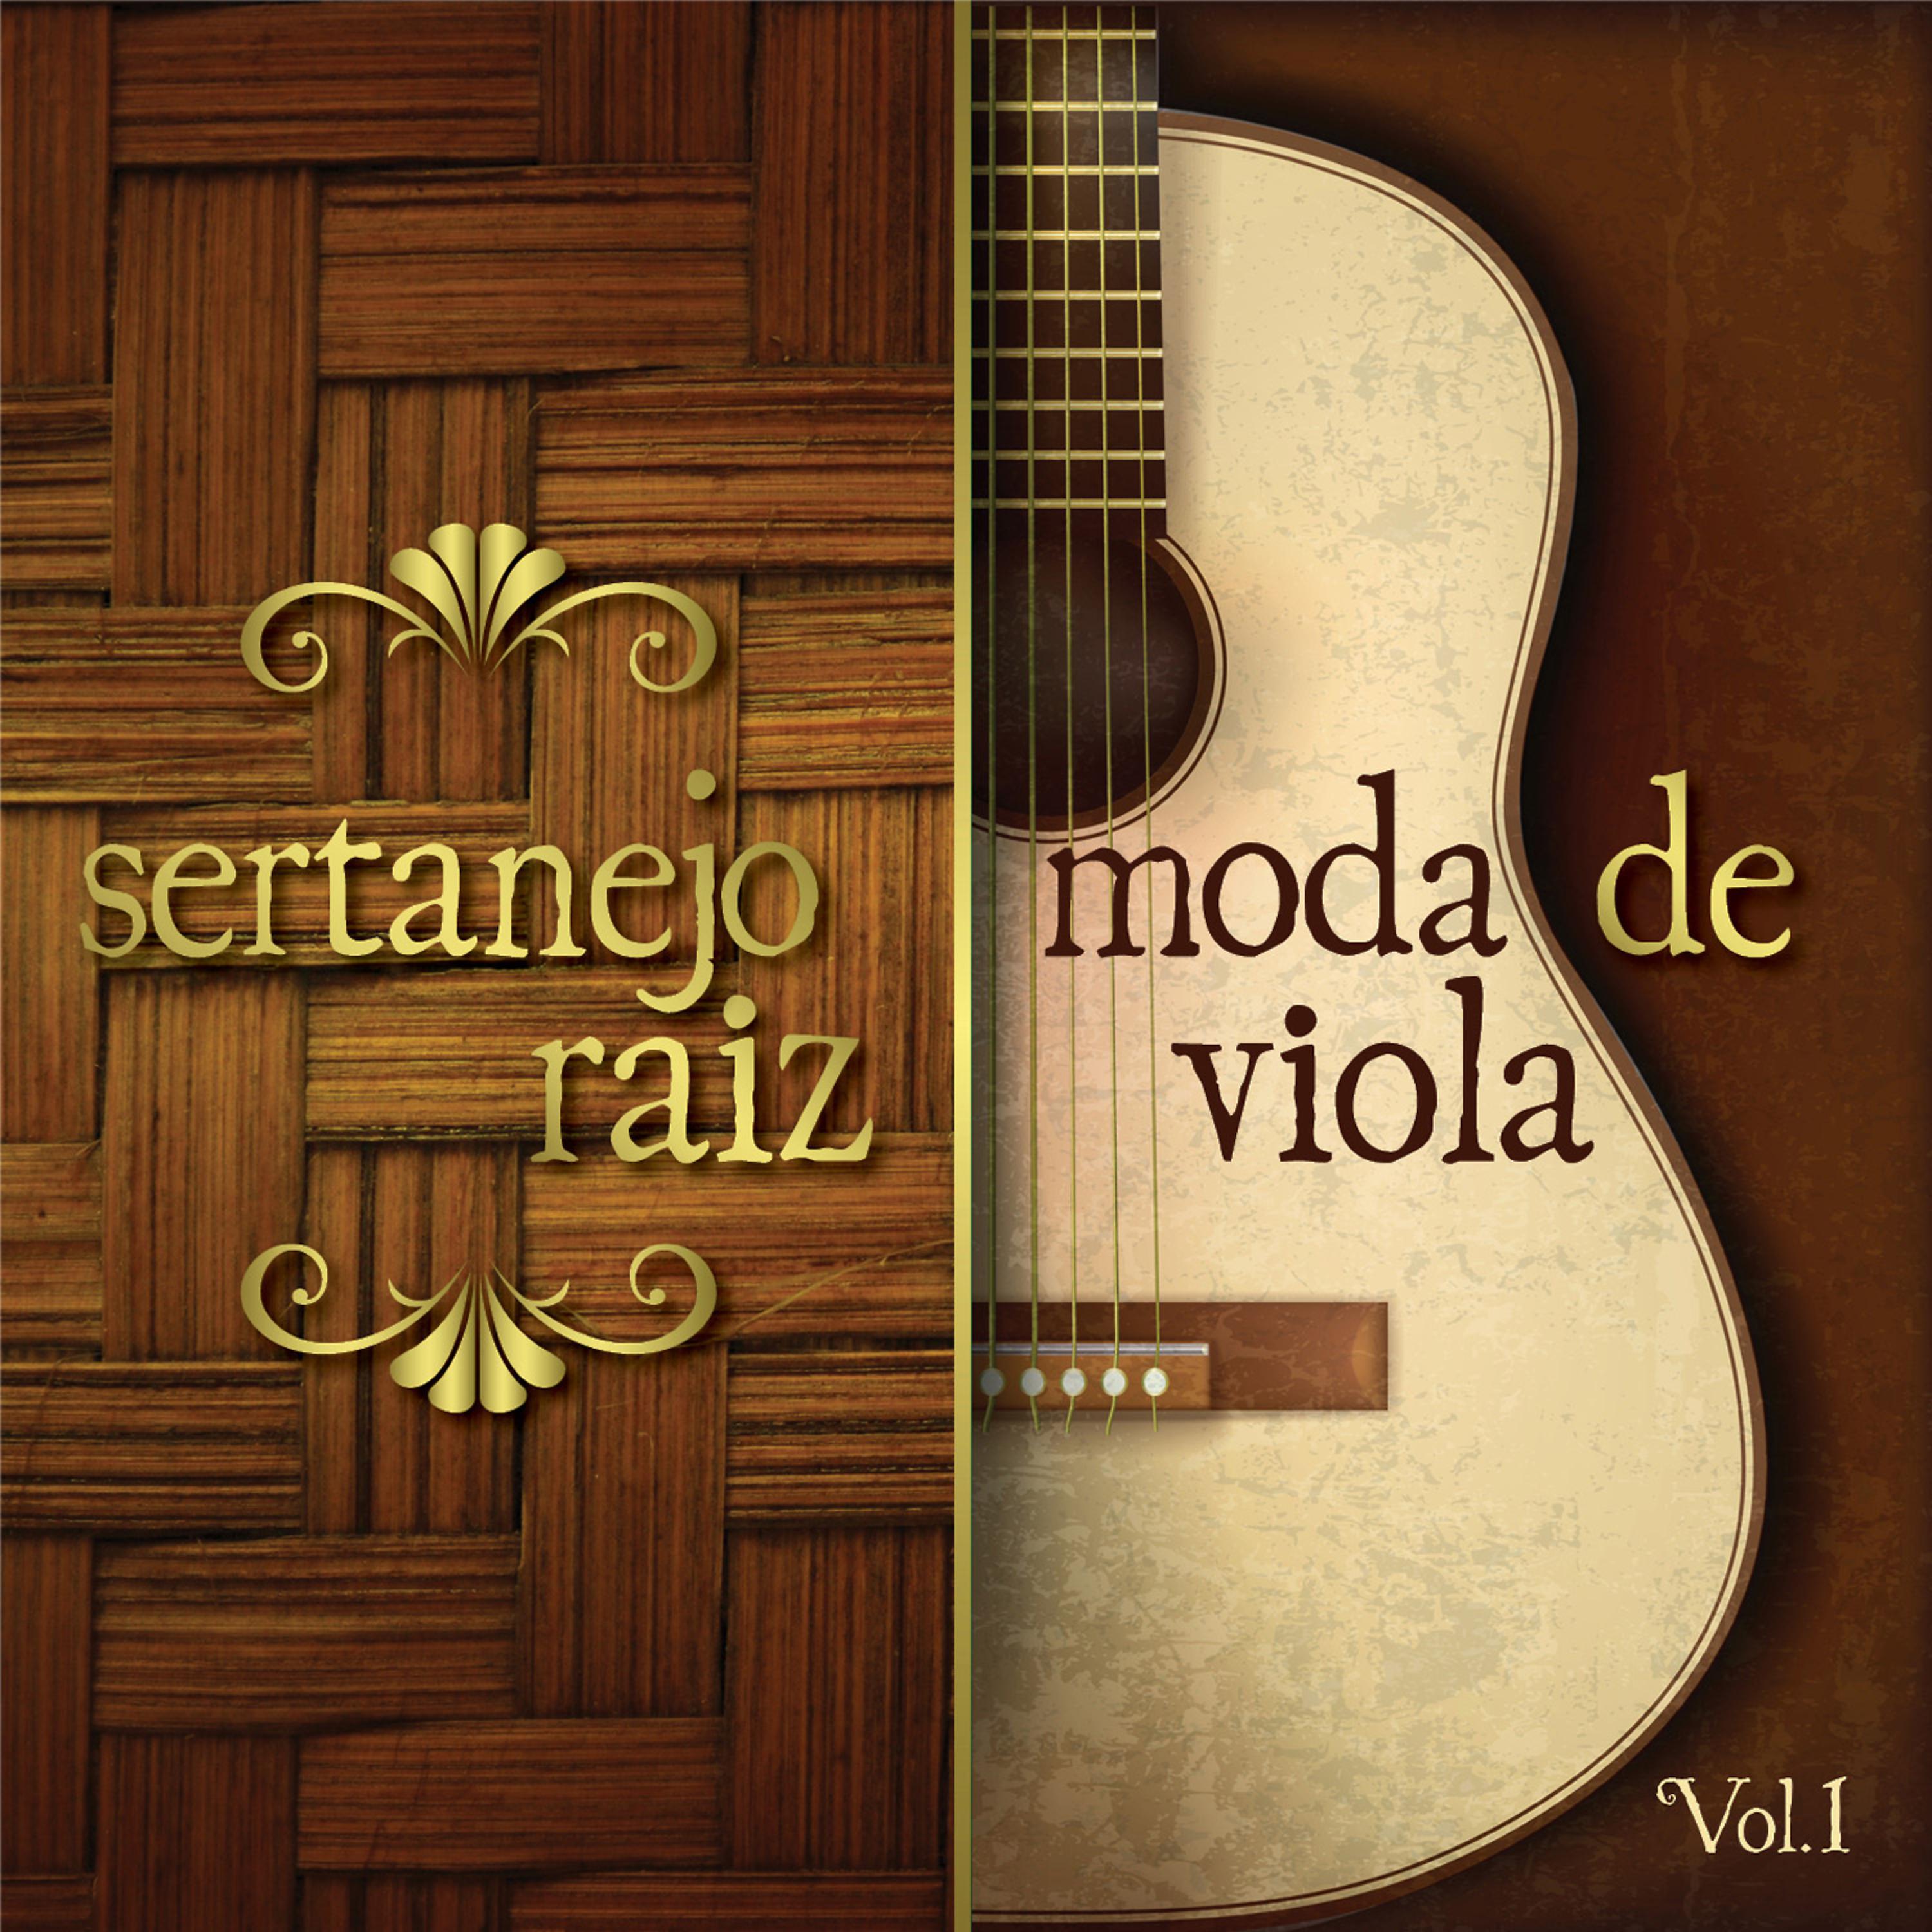 Постер альбома Sertanejo Raiz - Moda de Viola, Vol.1